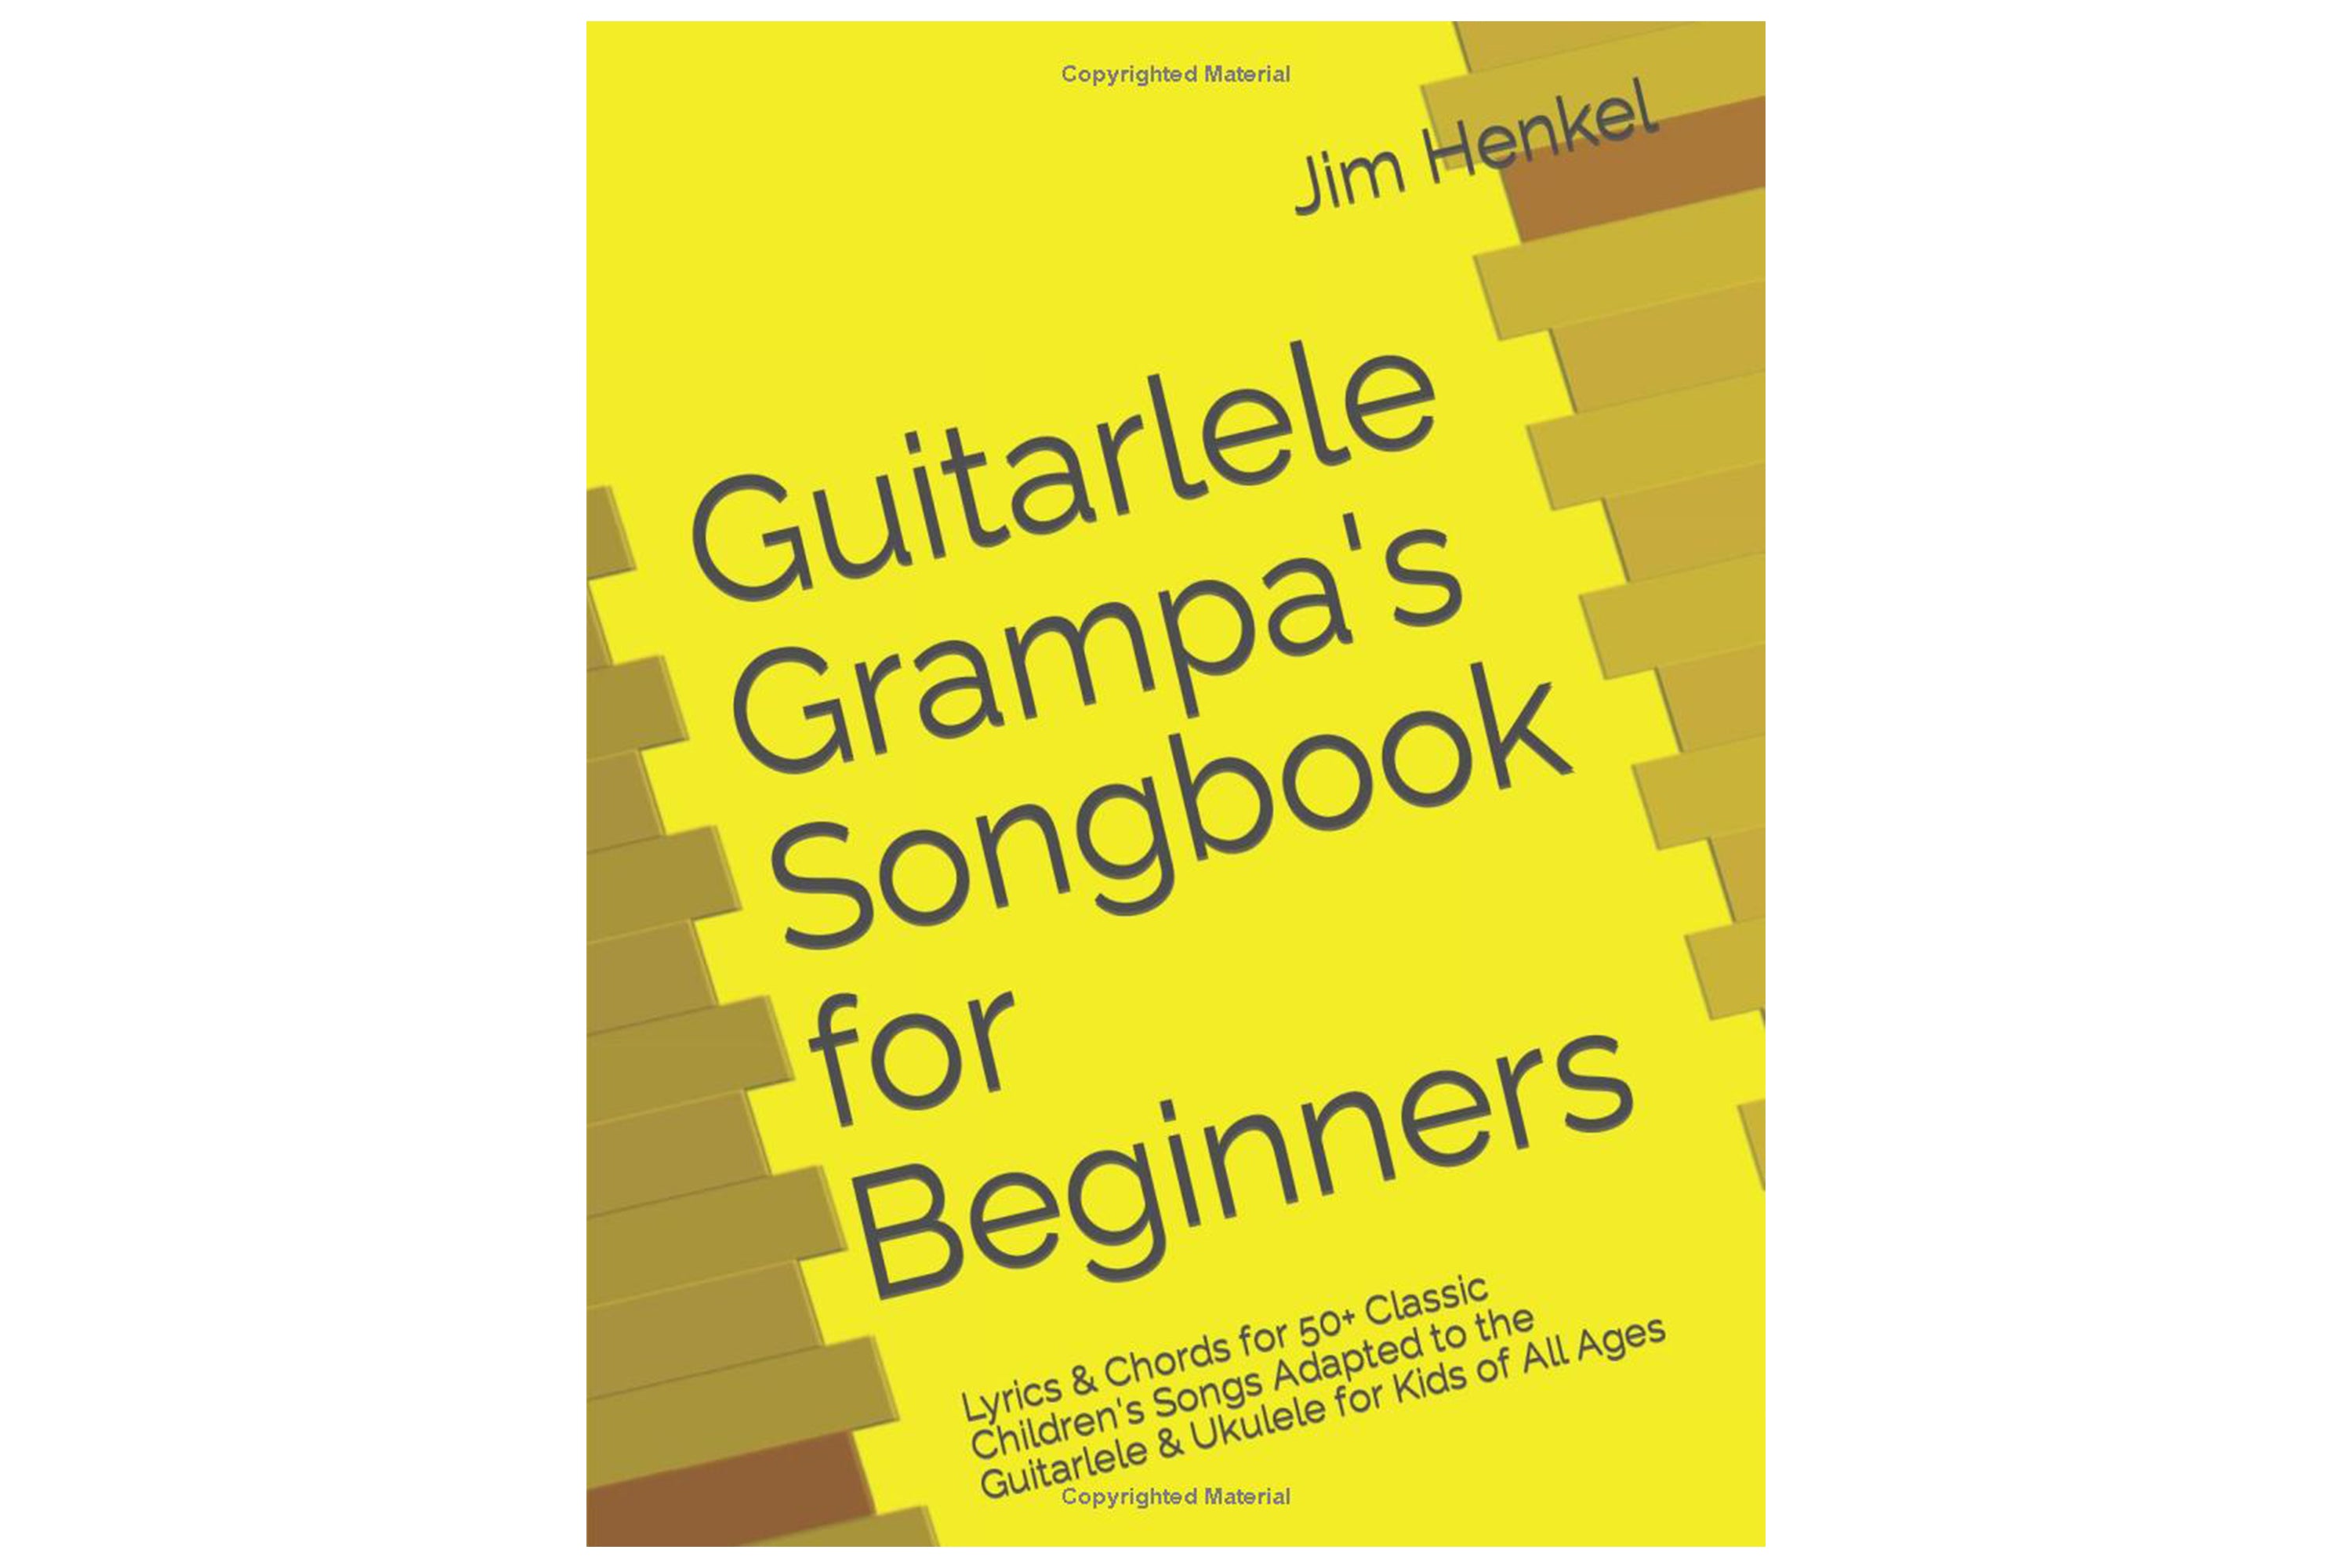 Guitarlele Grampa's Songbook for Beginners